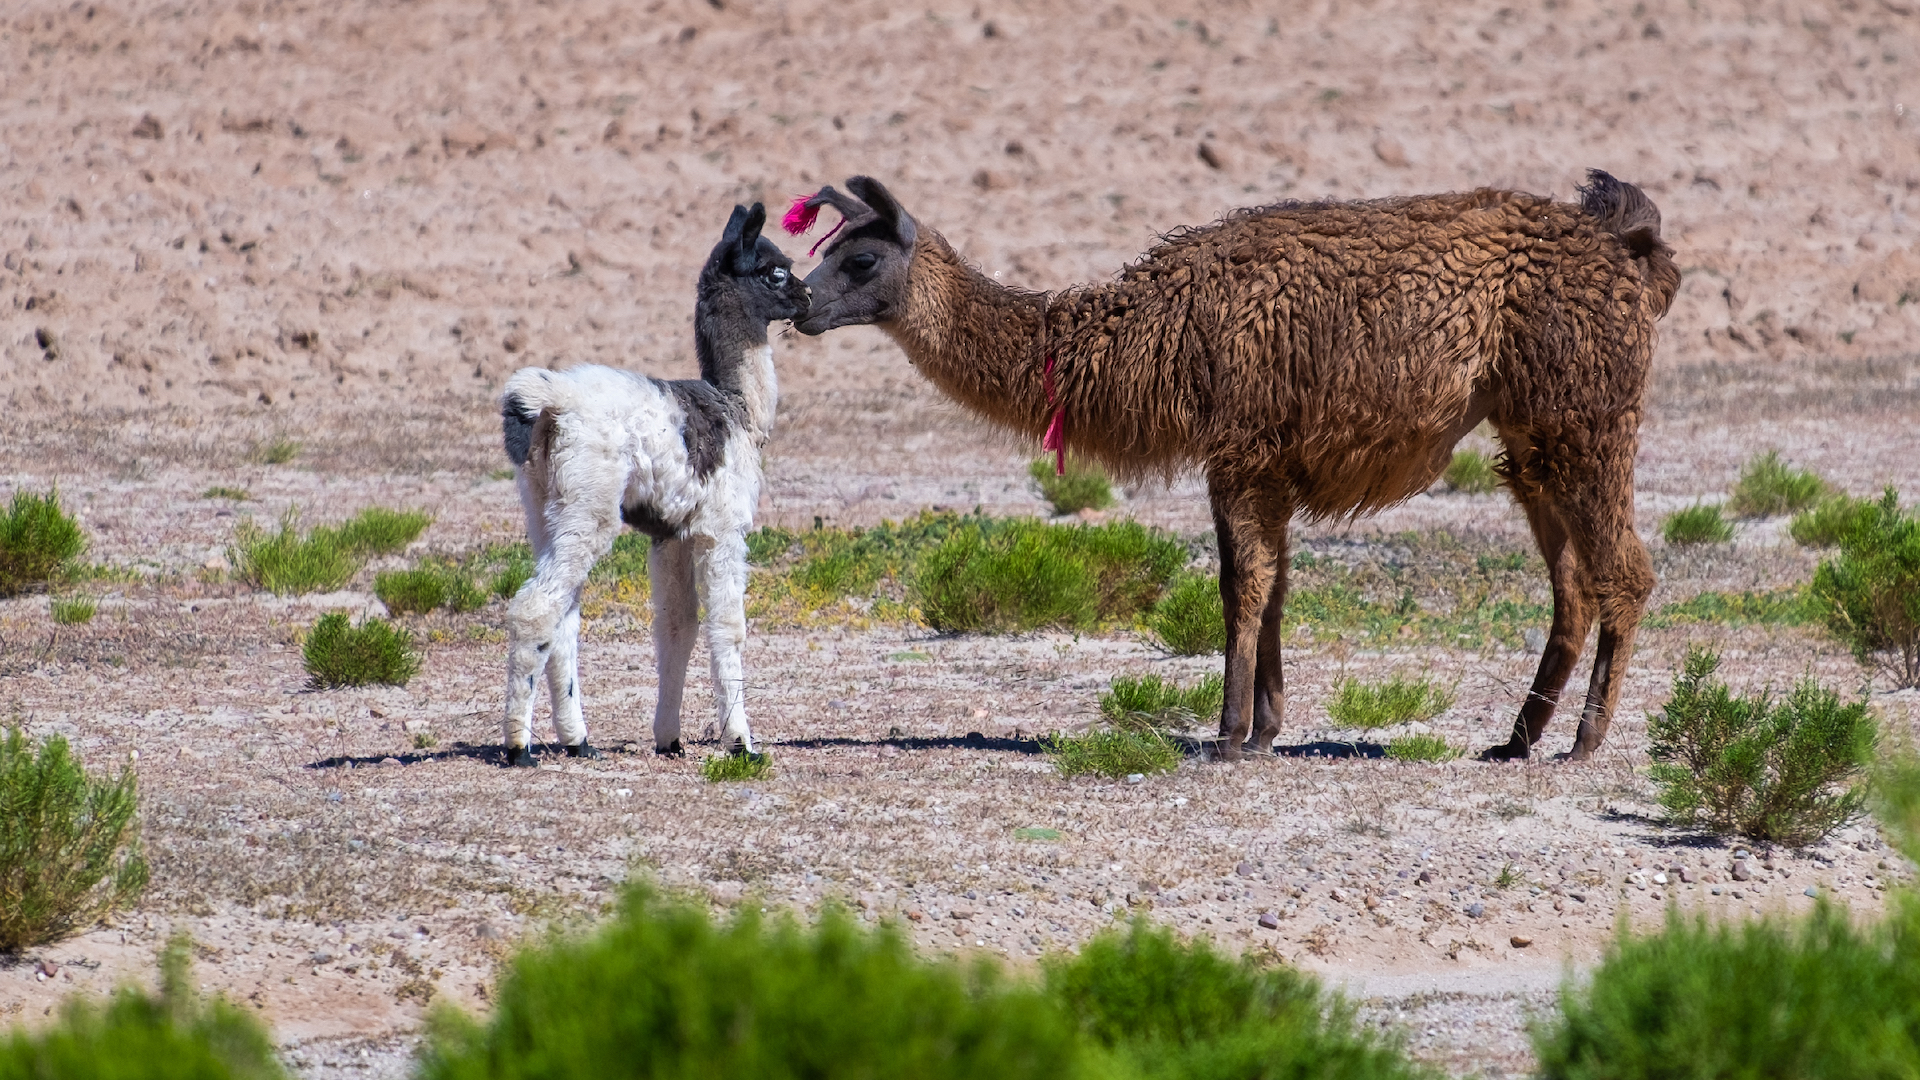 A llama and its baby